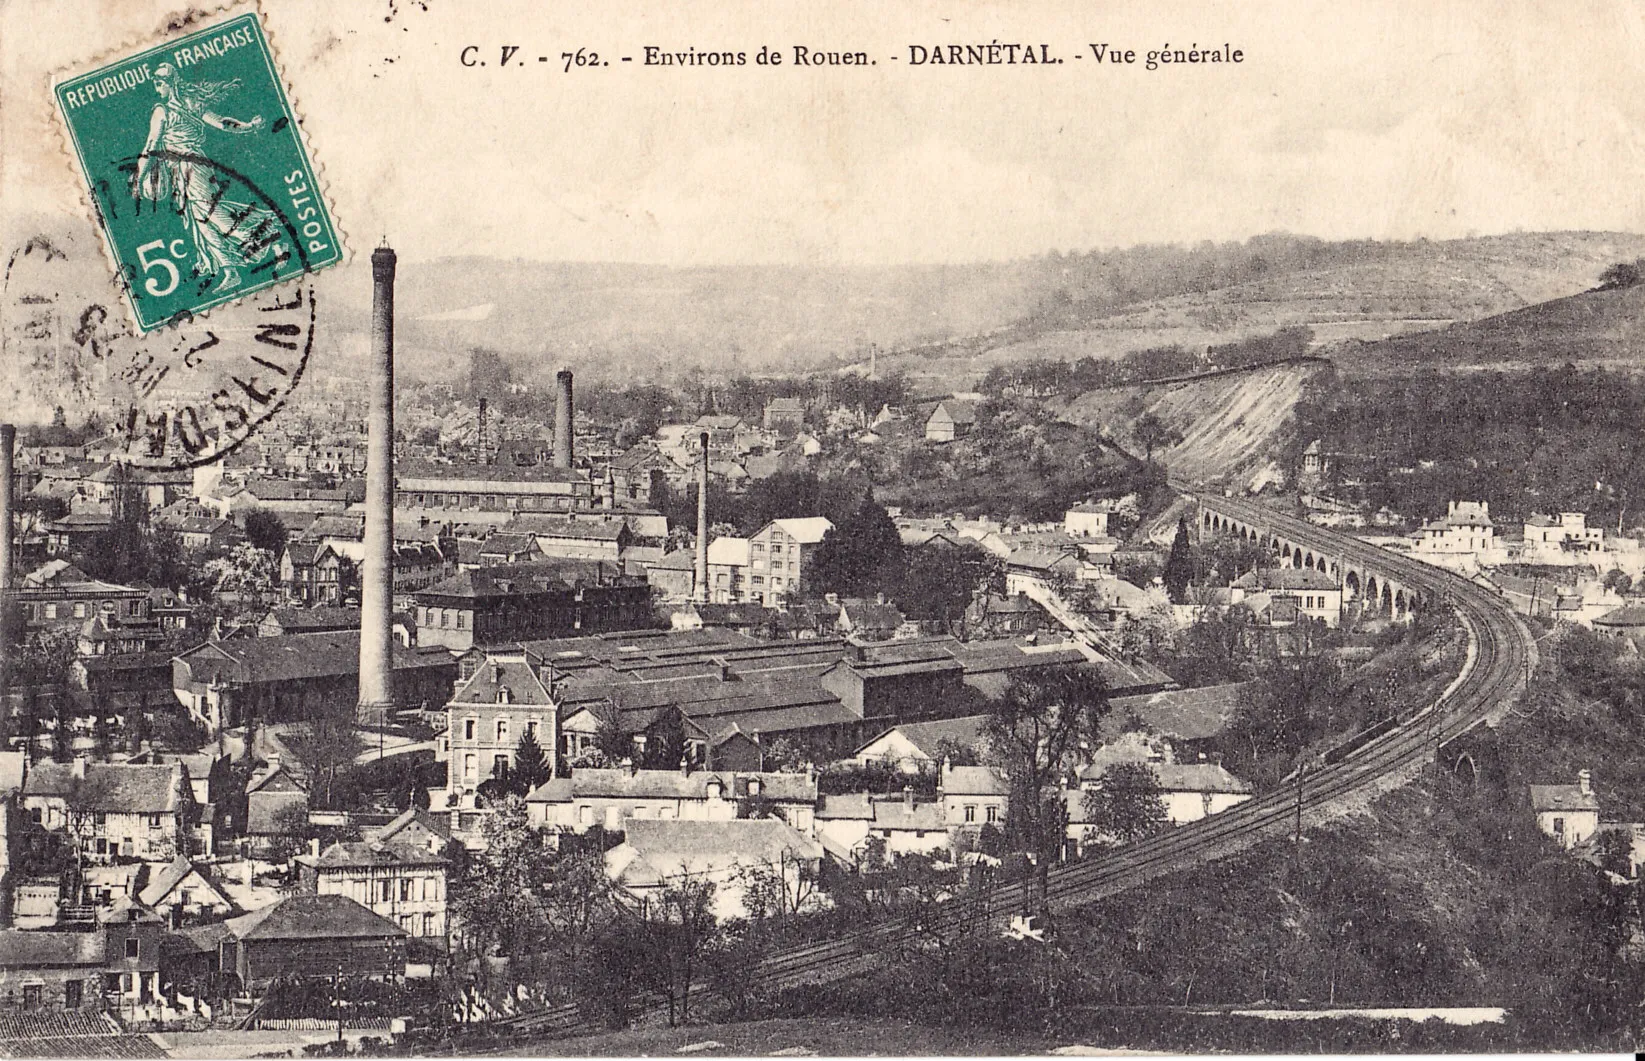 Photo showing: Carte postale ancienne éditée par CV, collection Environs de Rouen, n°762  : DARNETAL - Vue générale - la cheminée la plus haute marque l'emplacement de l'usine de la société Lucien Fromage et Cie.